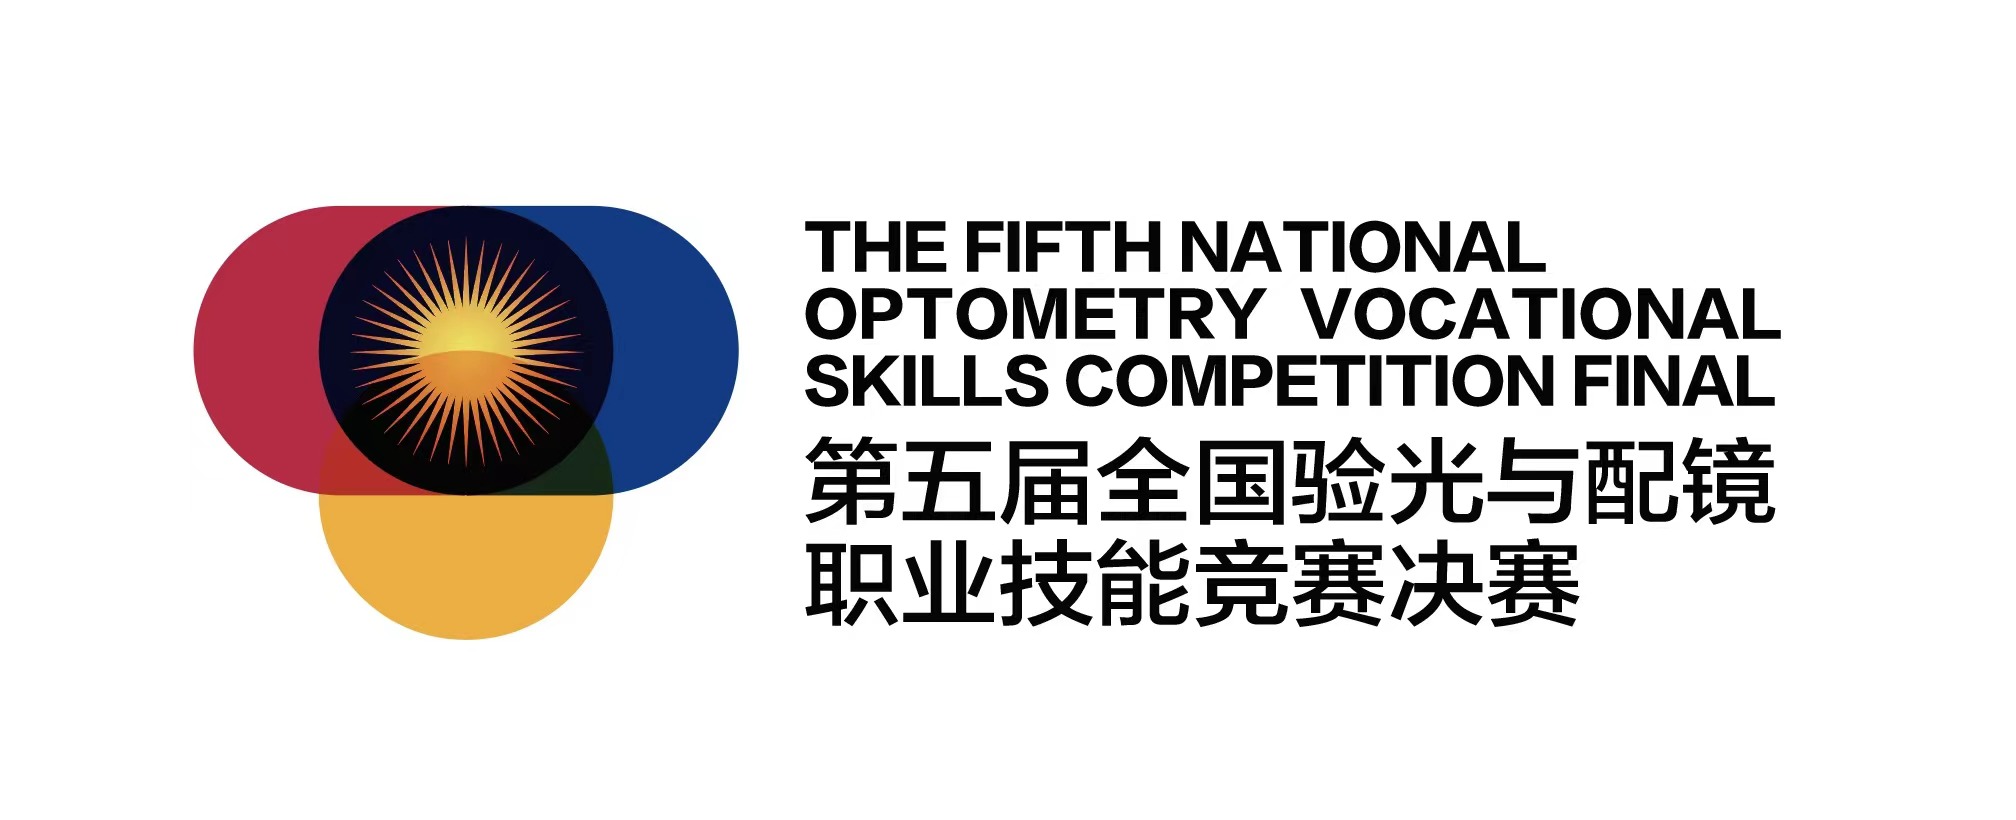 关于再次启动“第五届全国验光与配镜职业技能竞赛”的通知